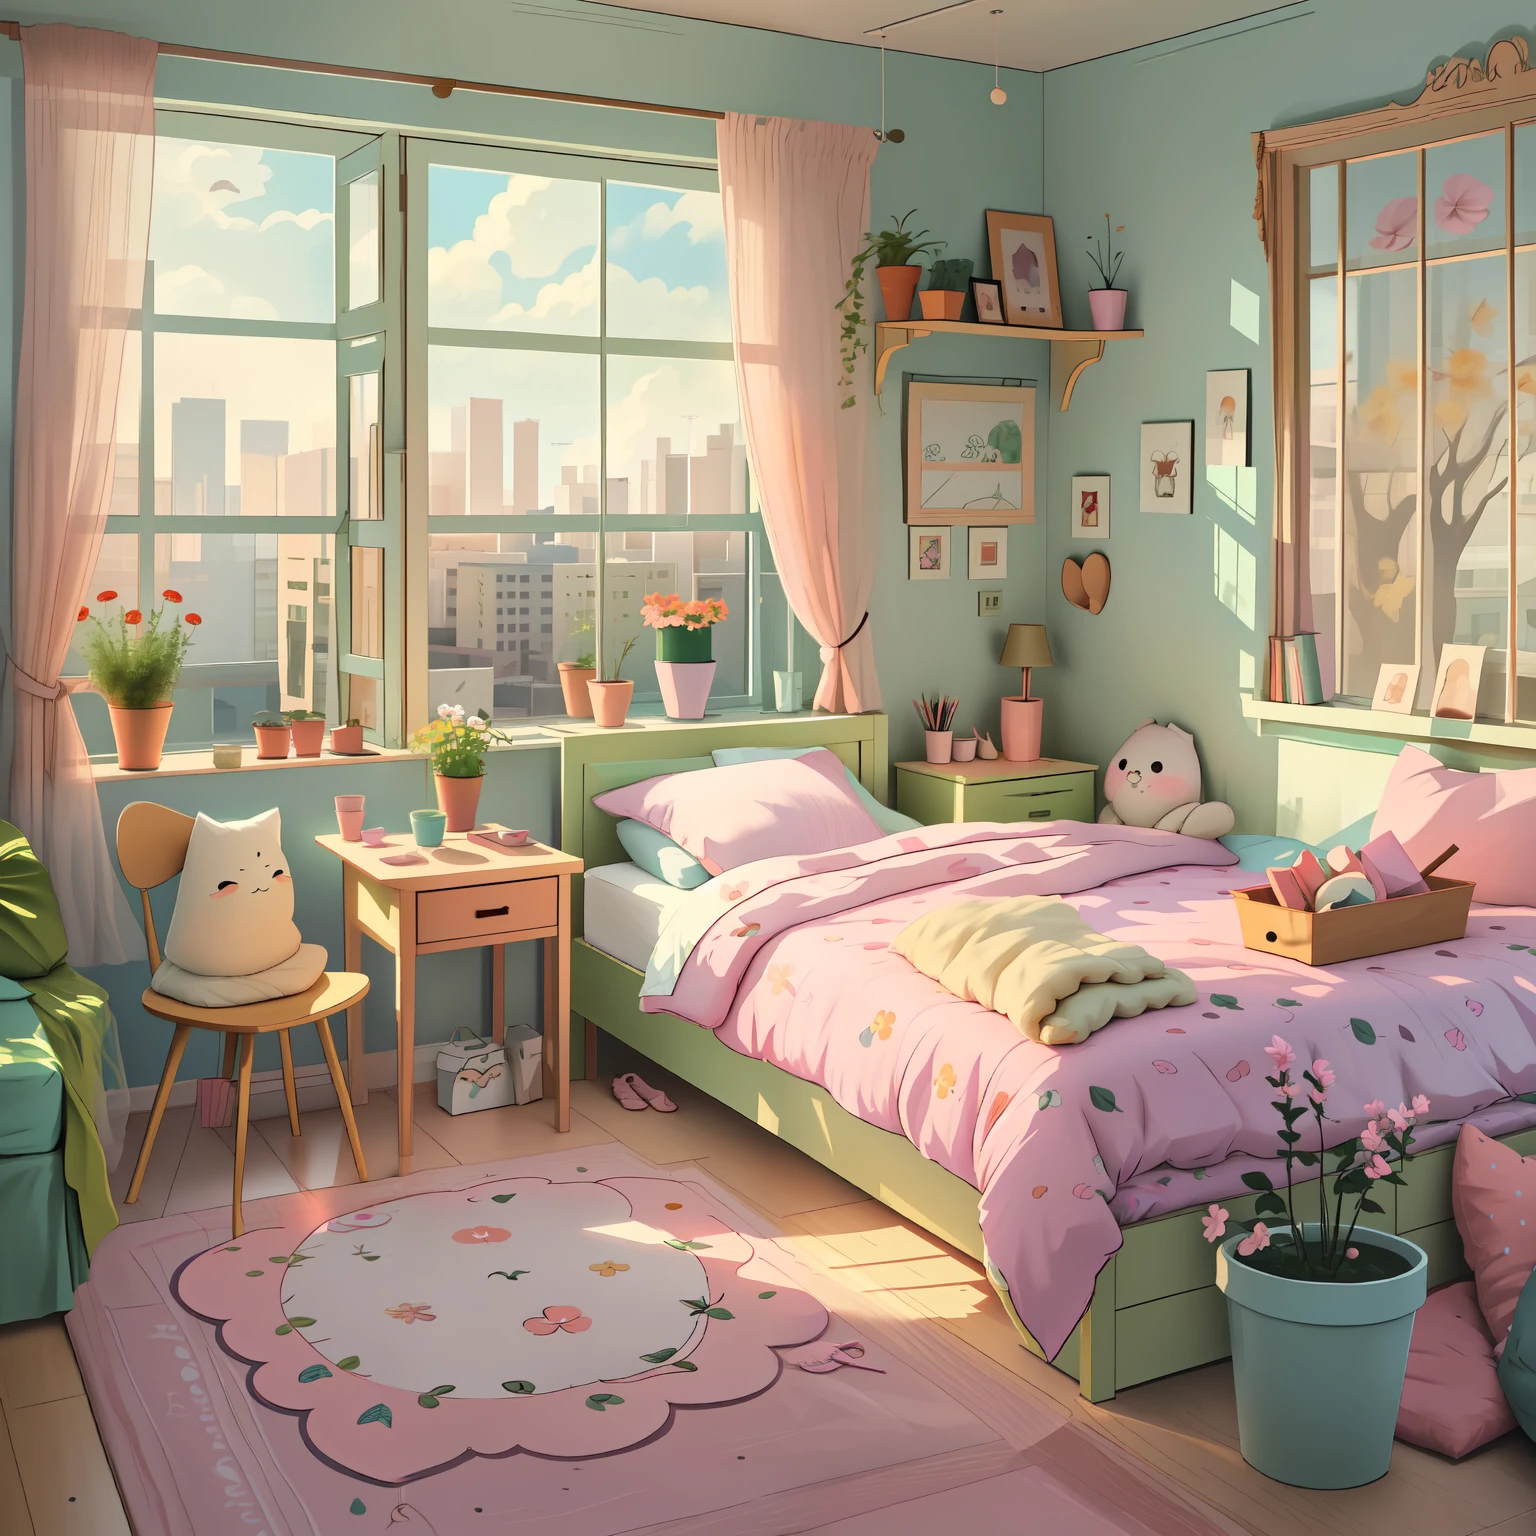 аниме пустая комната спальня стол, Двуспальная кровать, окно, подробное изображение, цветочные горшки, пастельные тона